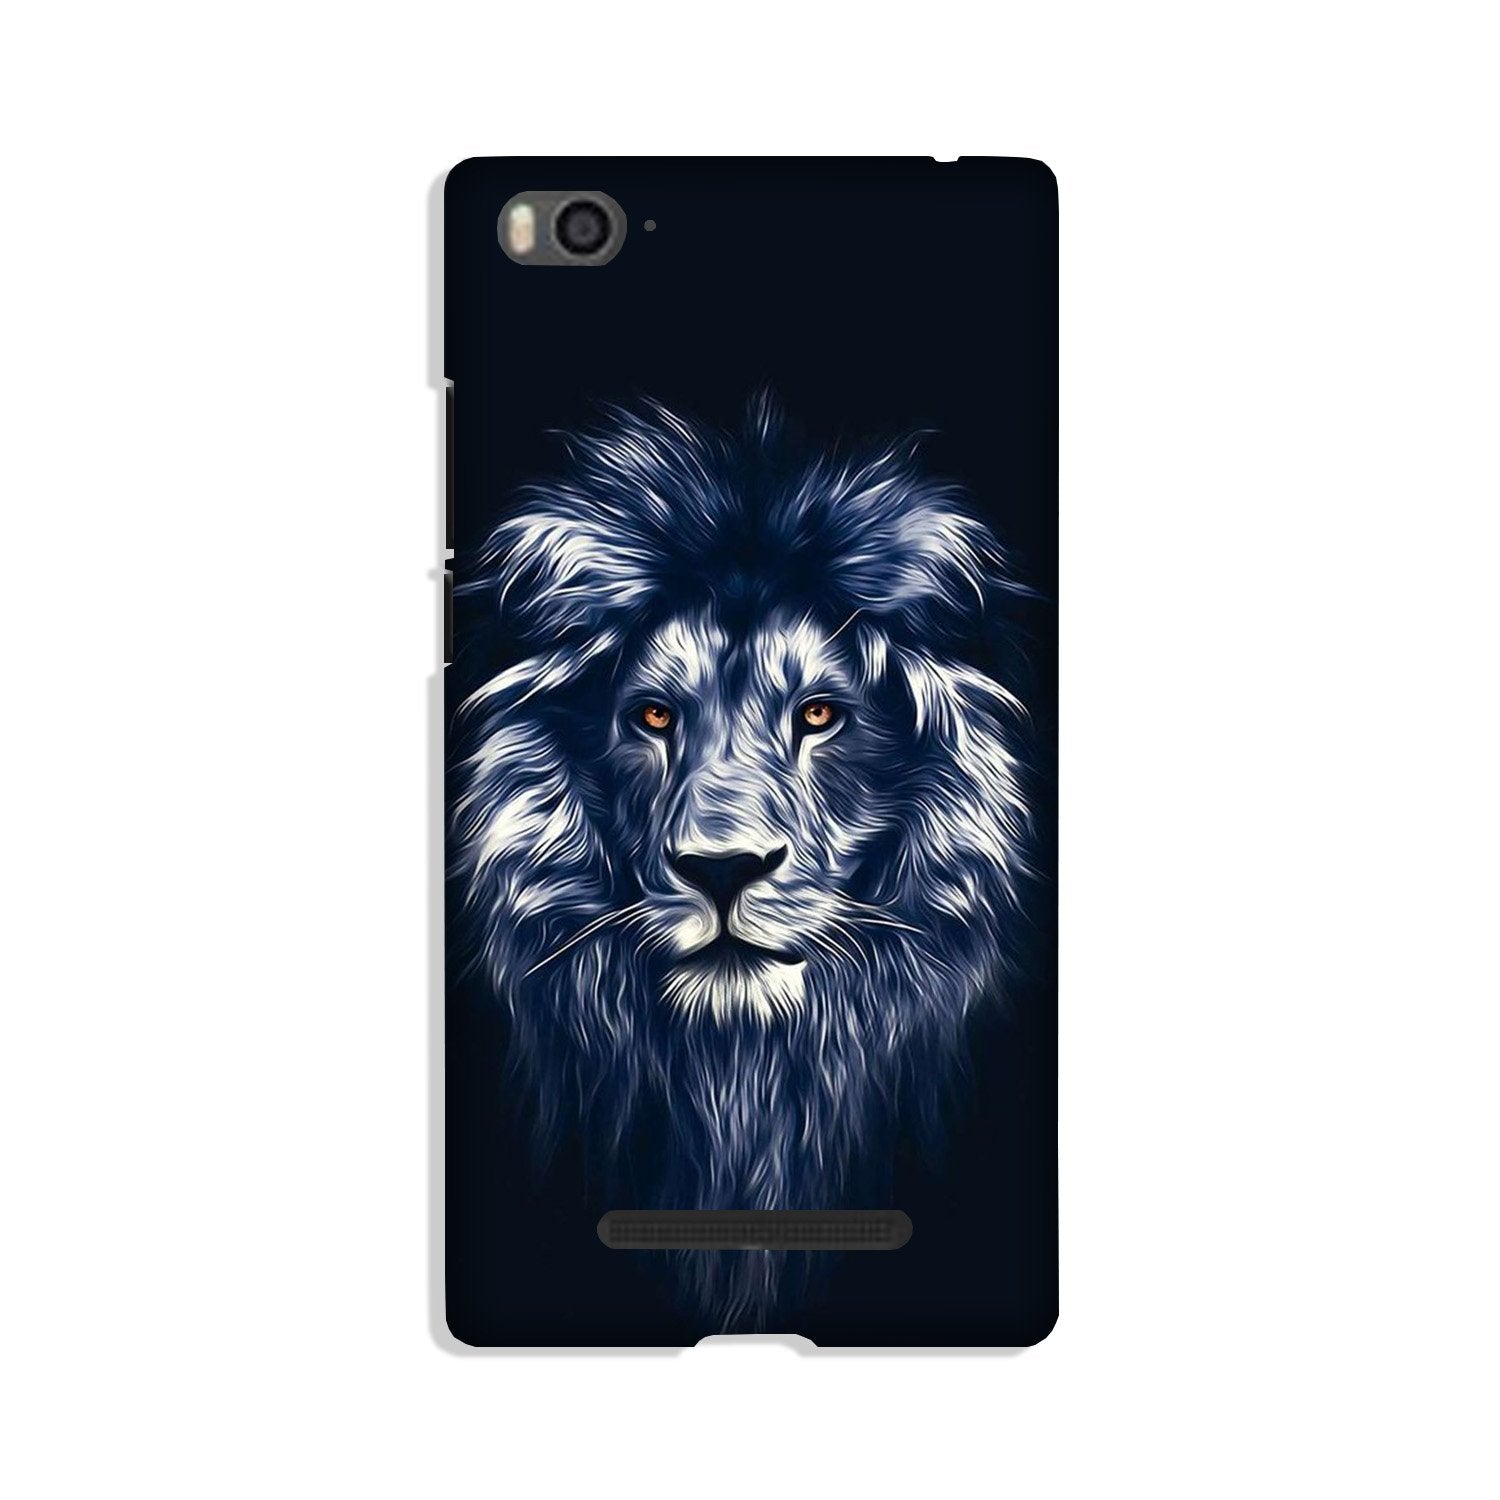 Lion Case for Xiaomi Mi 4i (Design No. 281)